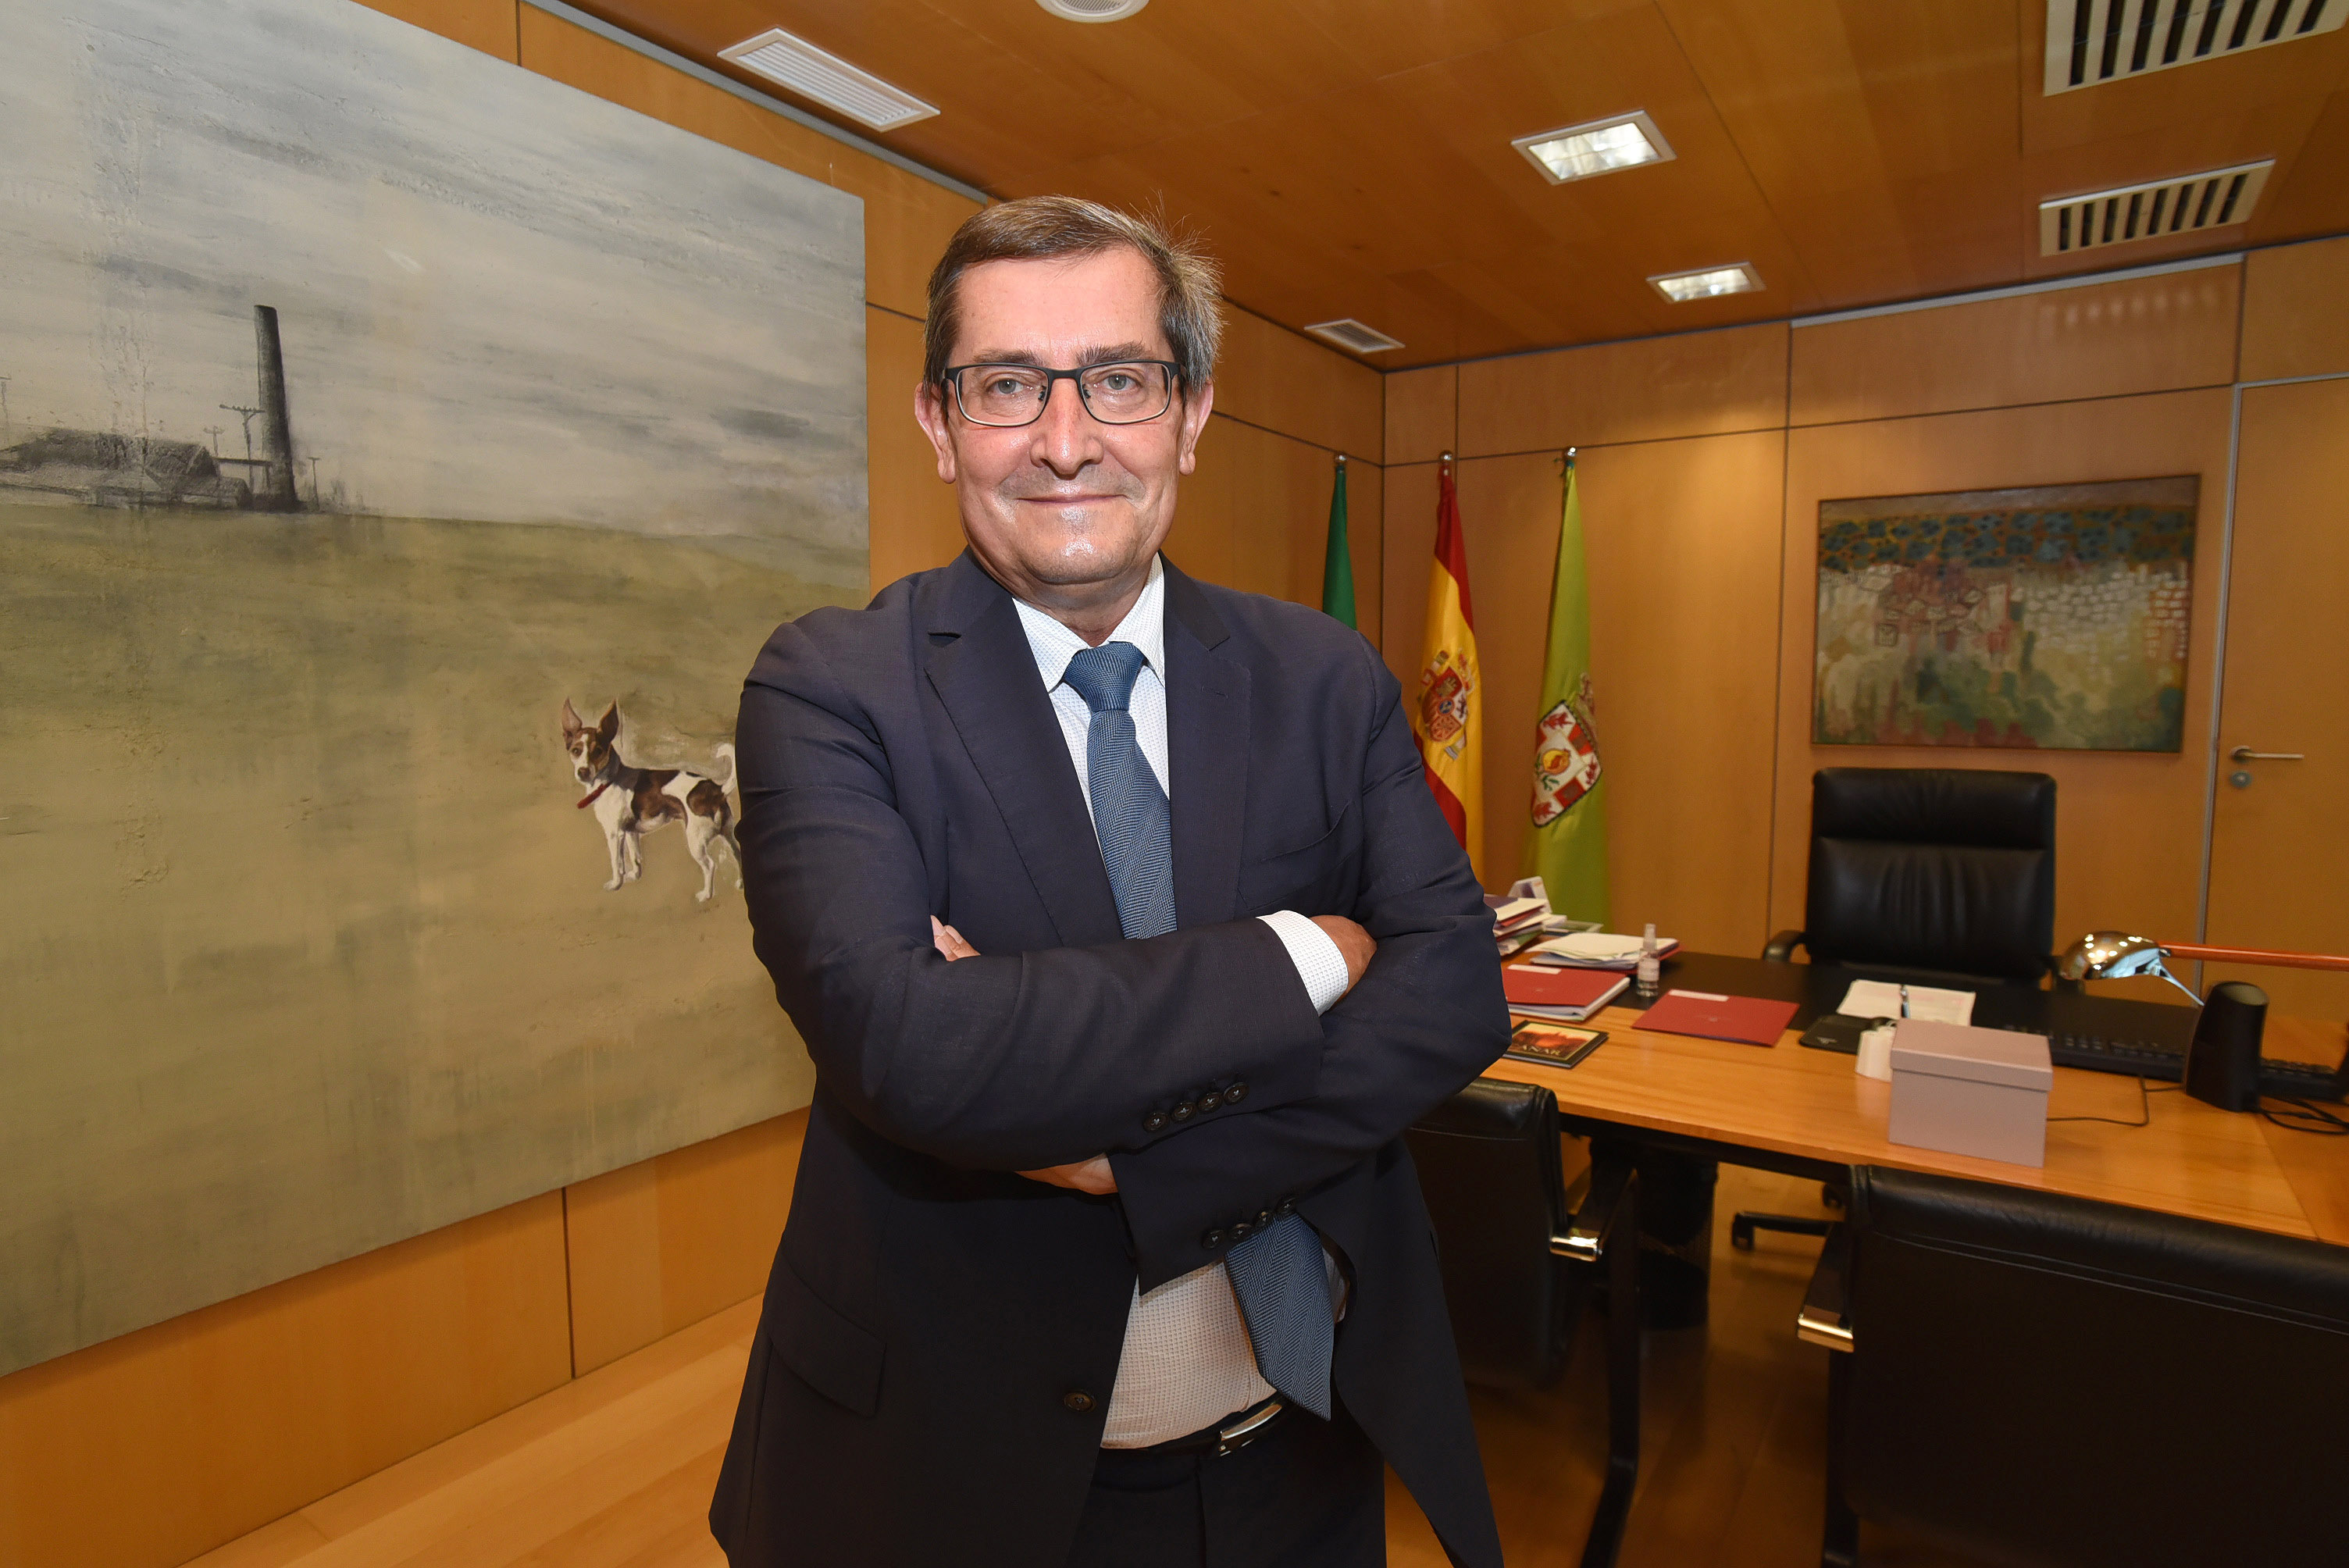 Plataforma de análisis sitúa a Entrena como el más transparente entre los presidentes provinciales e insulares de España